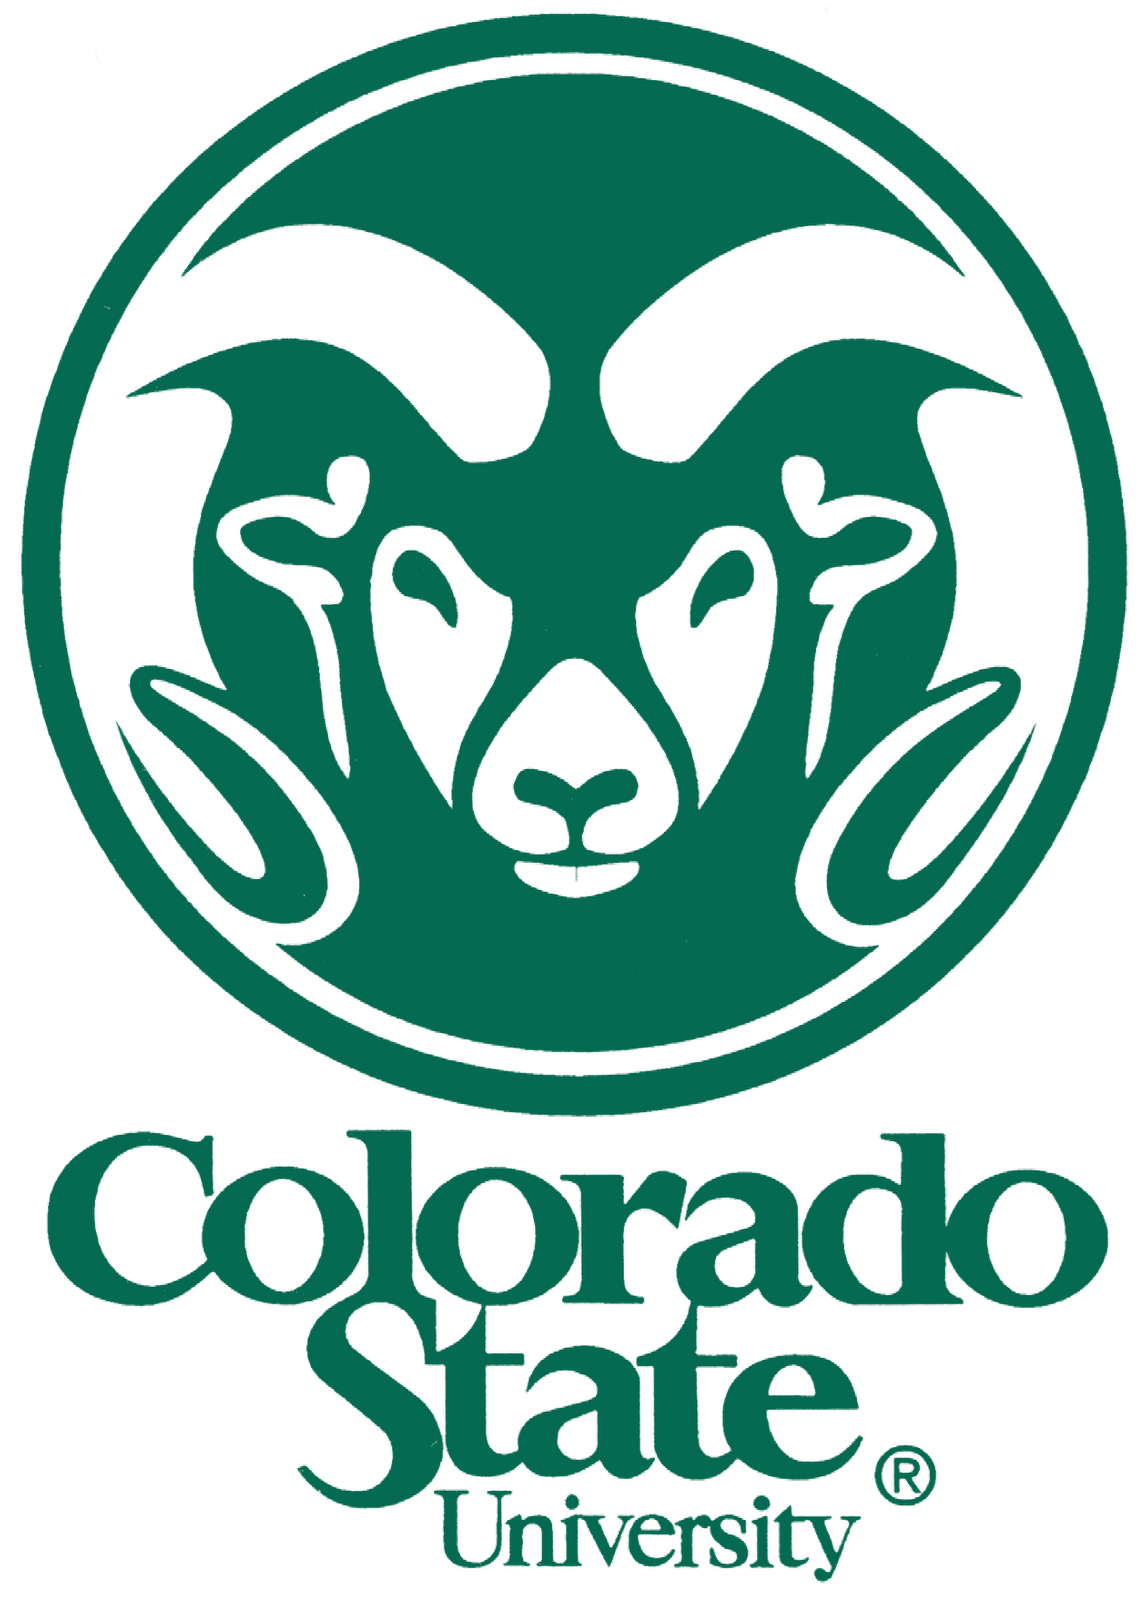 Colorado State University - Yurtdışı Üniversite